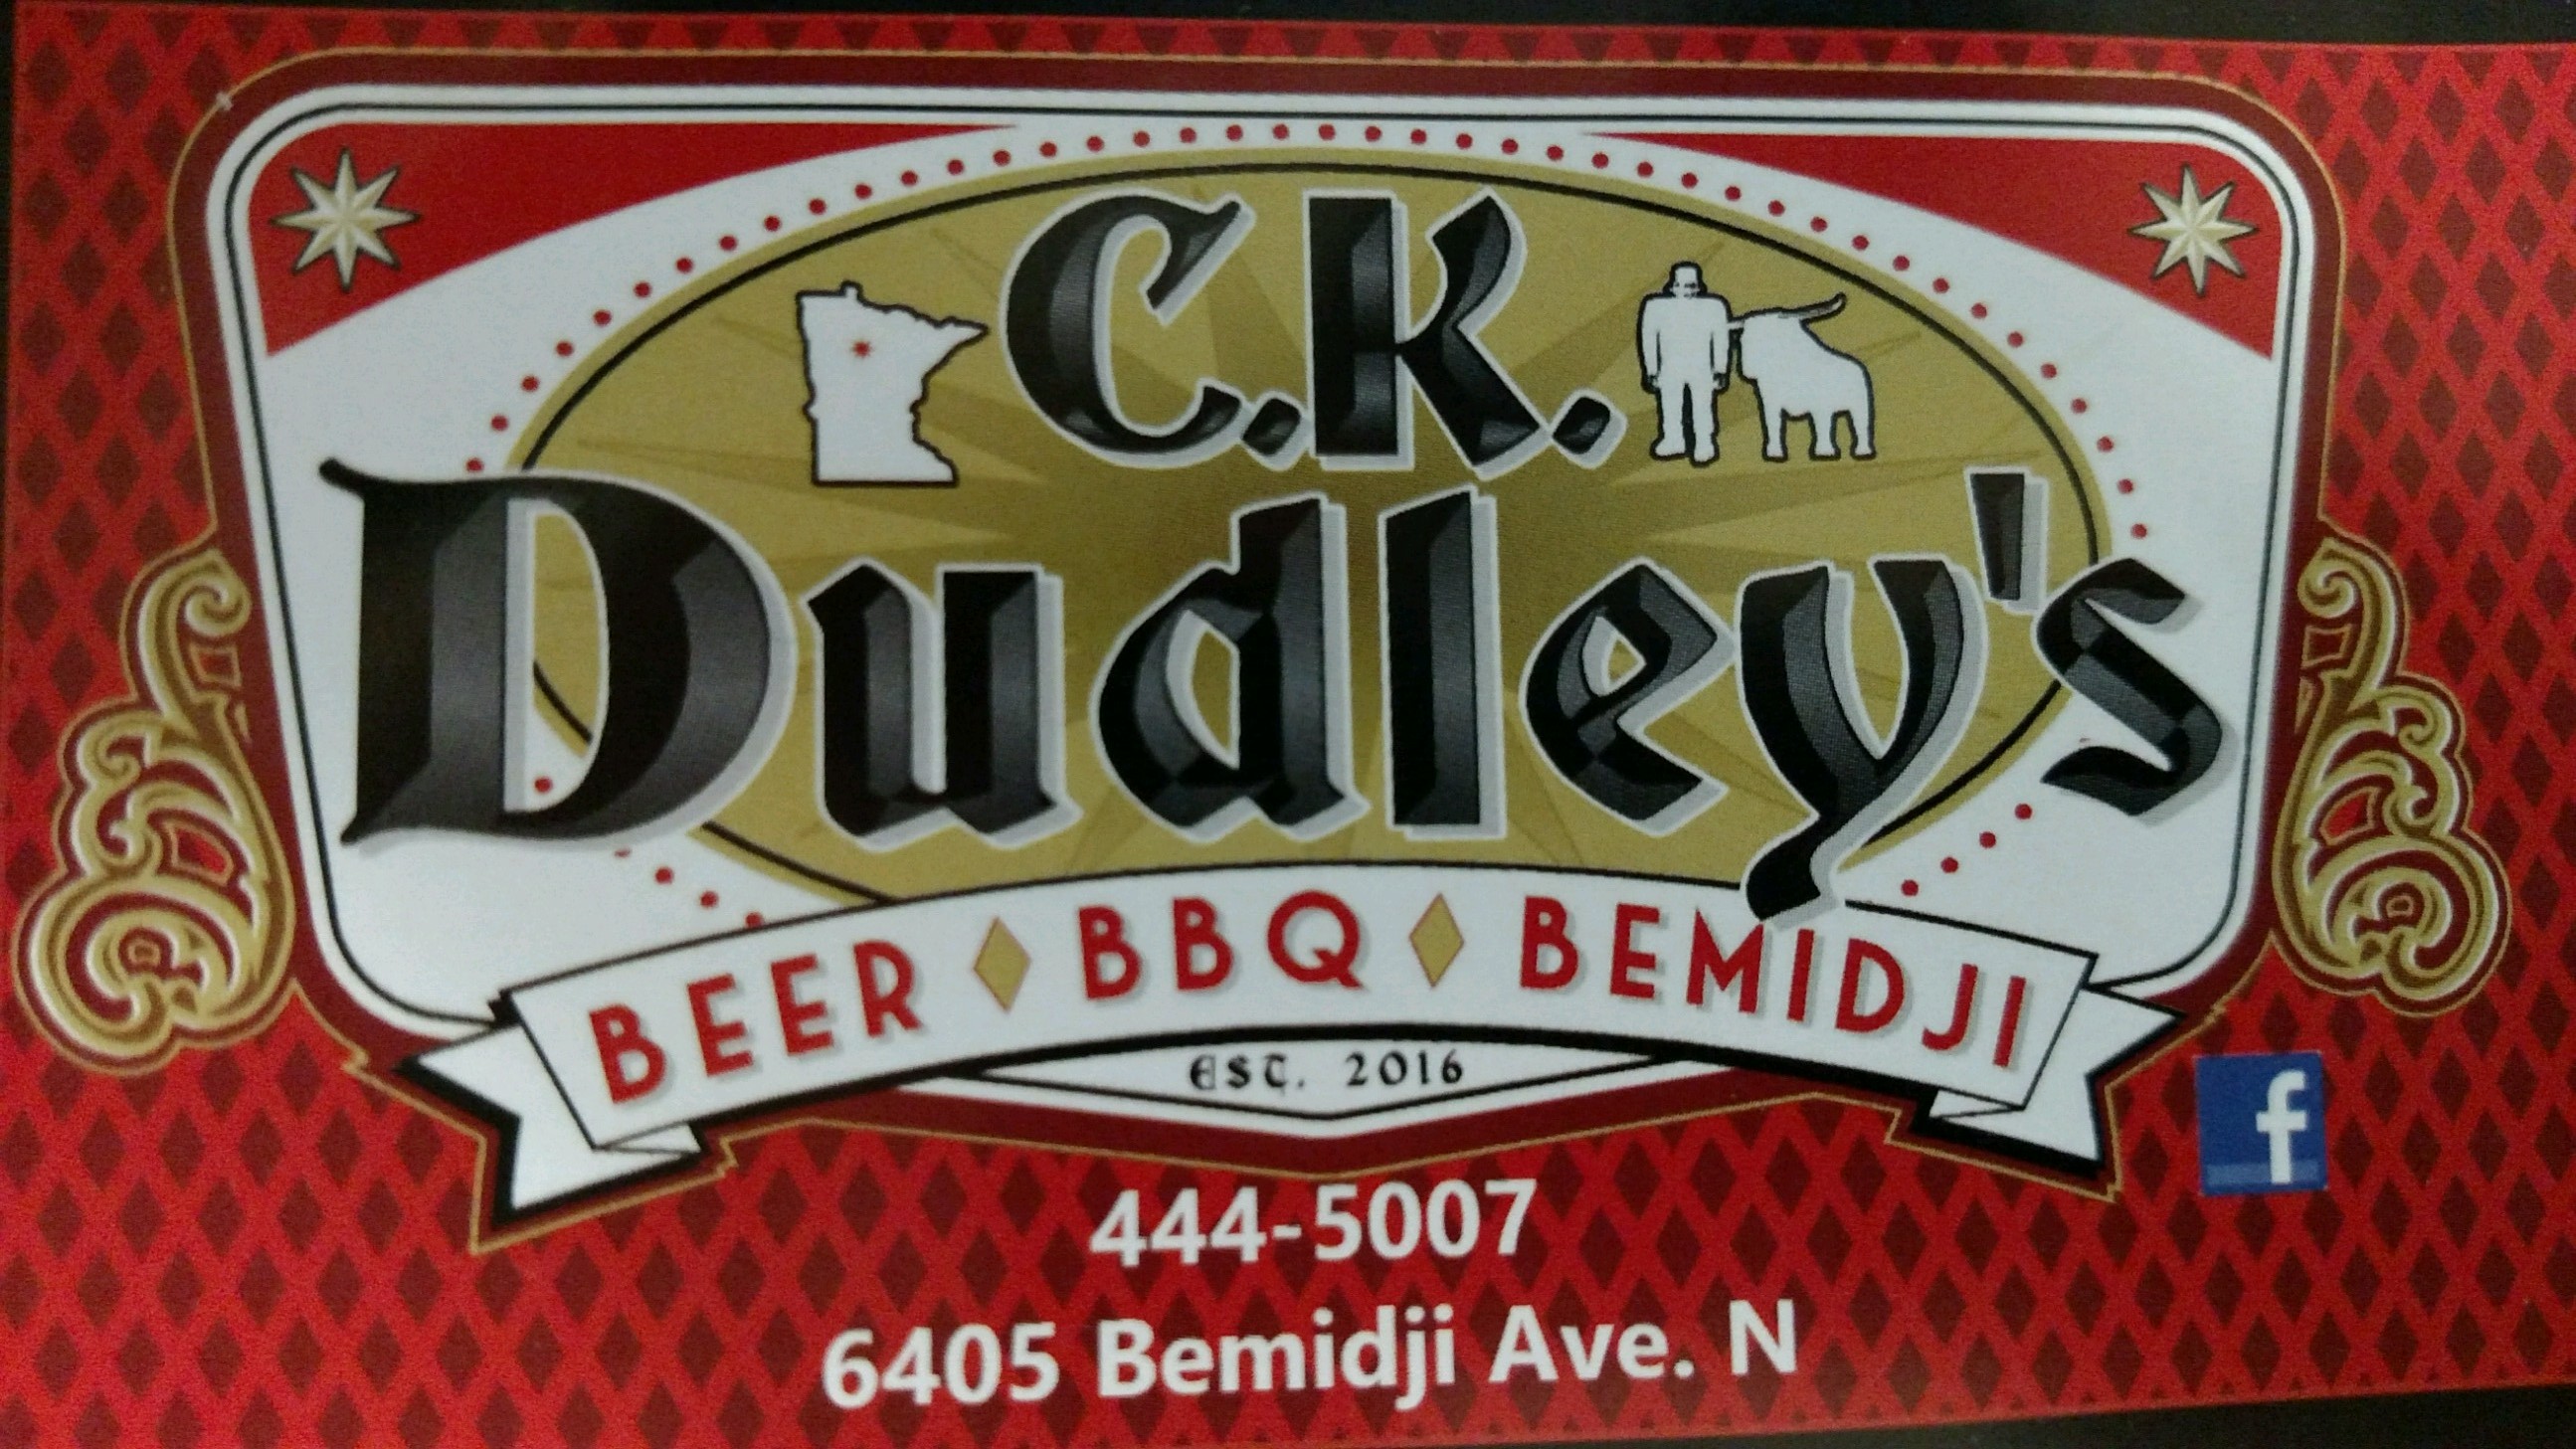 CK Dudley's